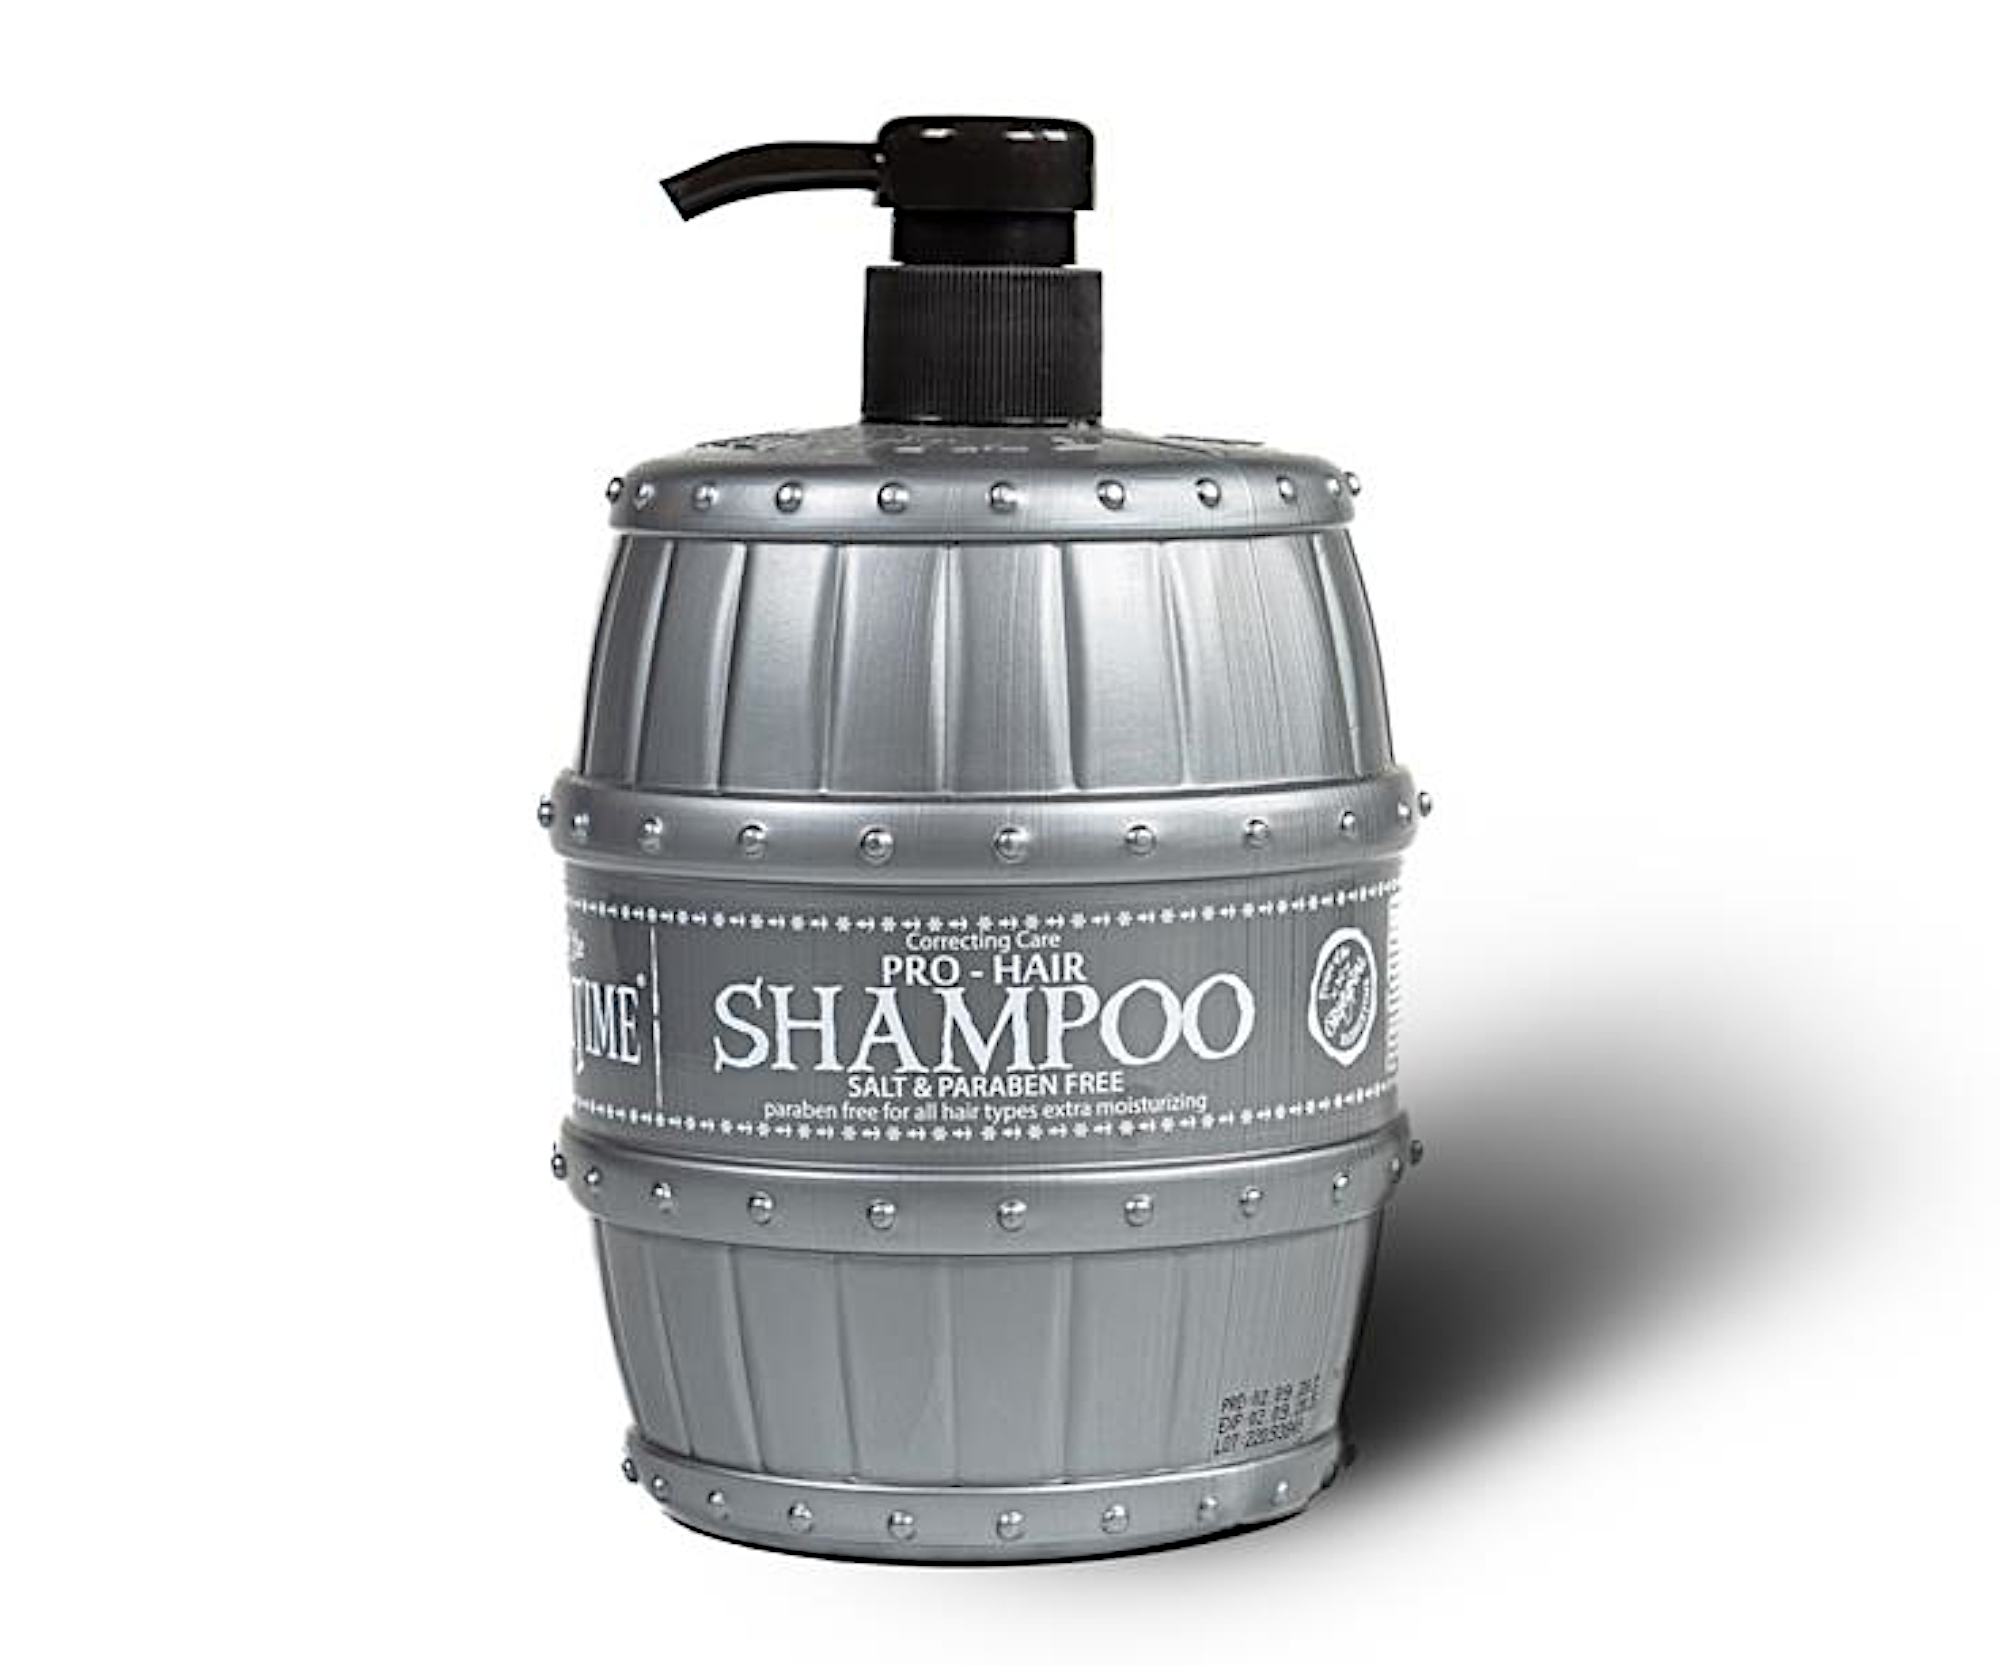 Pánský šampon pro všechny typy vlasů Barbertime Pro-Hair Shampoo - 1000 ml - Pirates of the Barbertime + dárek zdarma